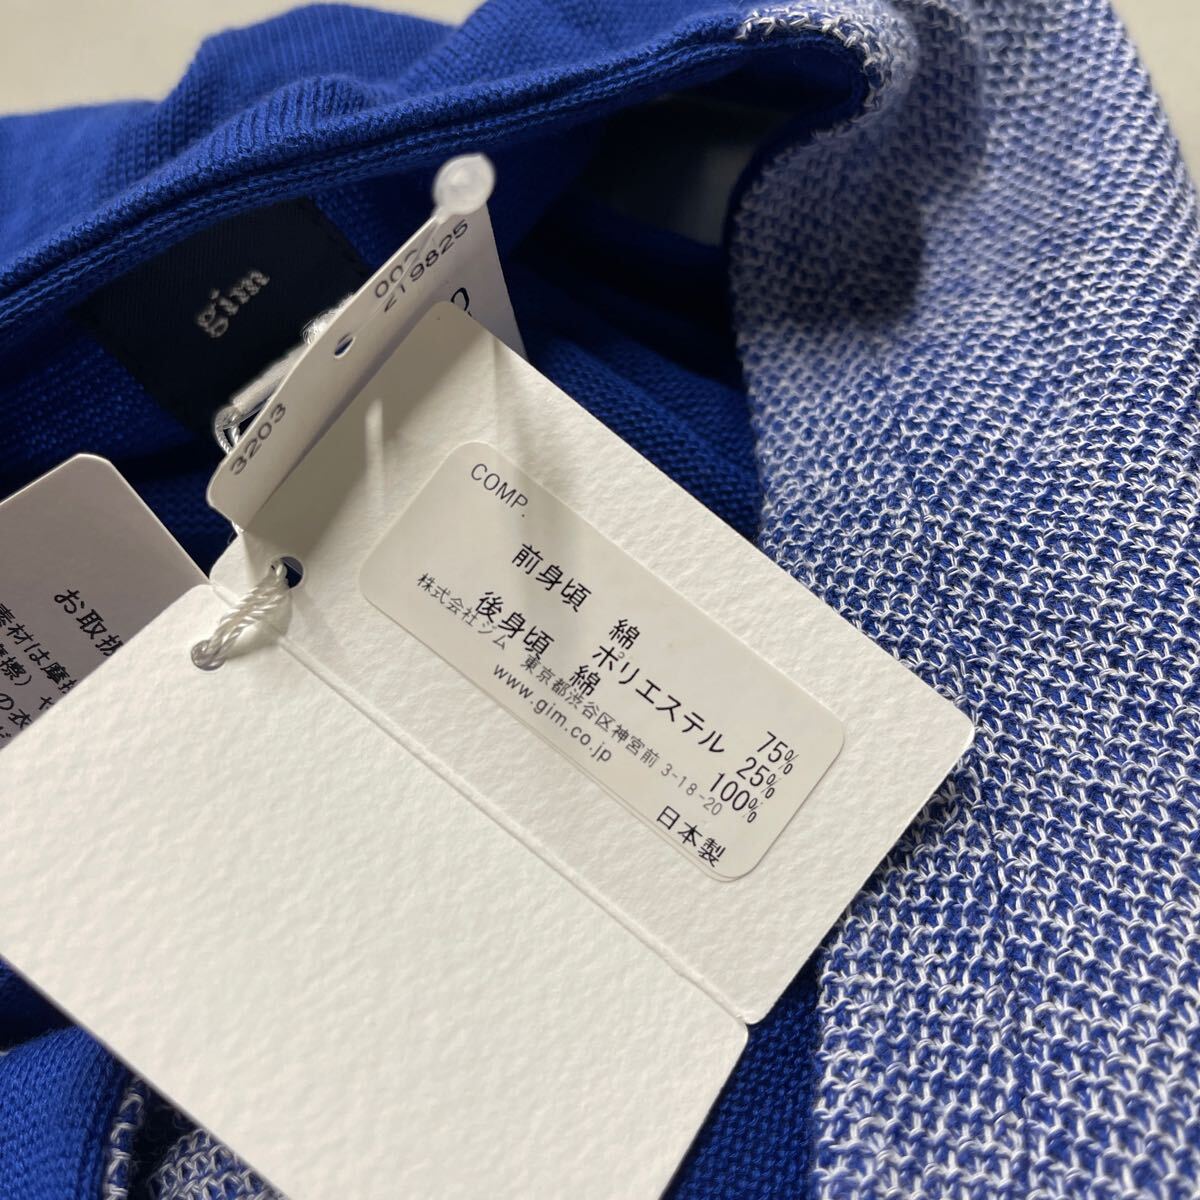 gim жилет лучший мужской M размер сделано в Японии MADE IN JAPAN синий blue обычная цена 11000 иен 